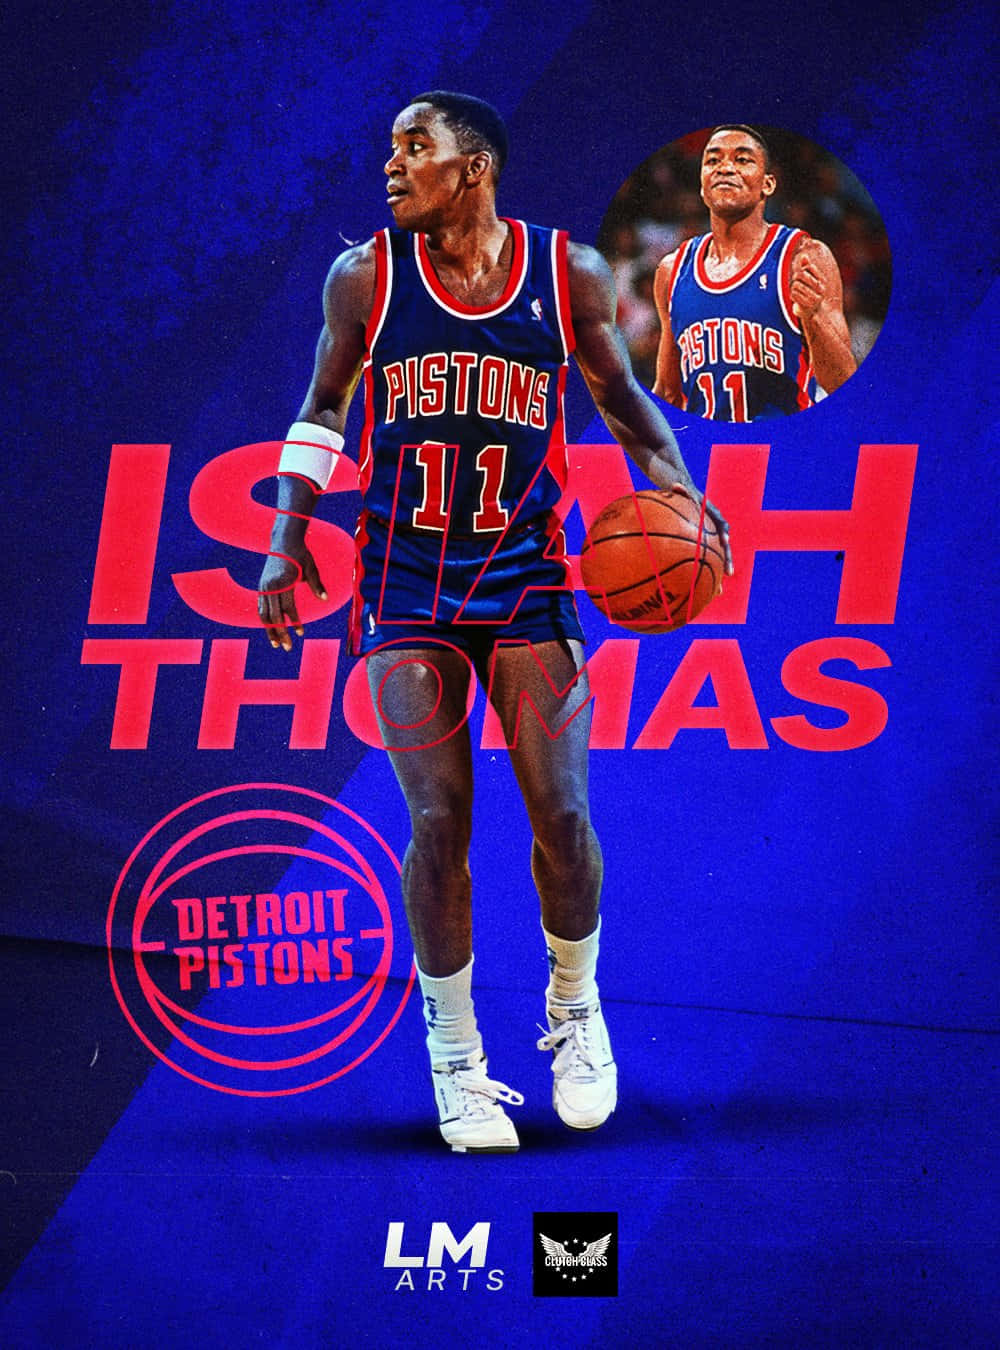 Amerikanskföre Detta Professionell Basketspelare Isiah Thomas-poster. Wallpaper